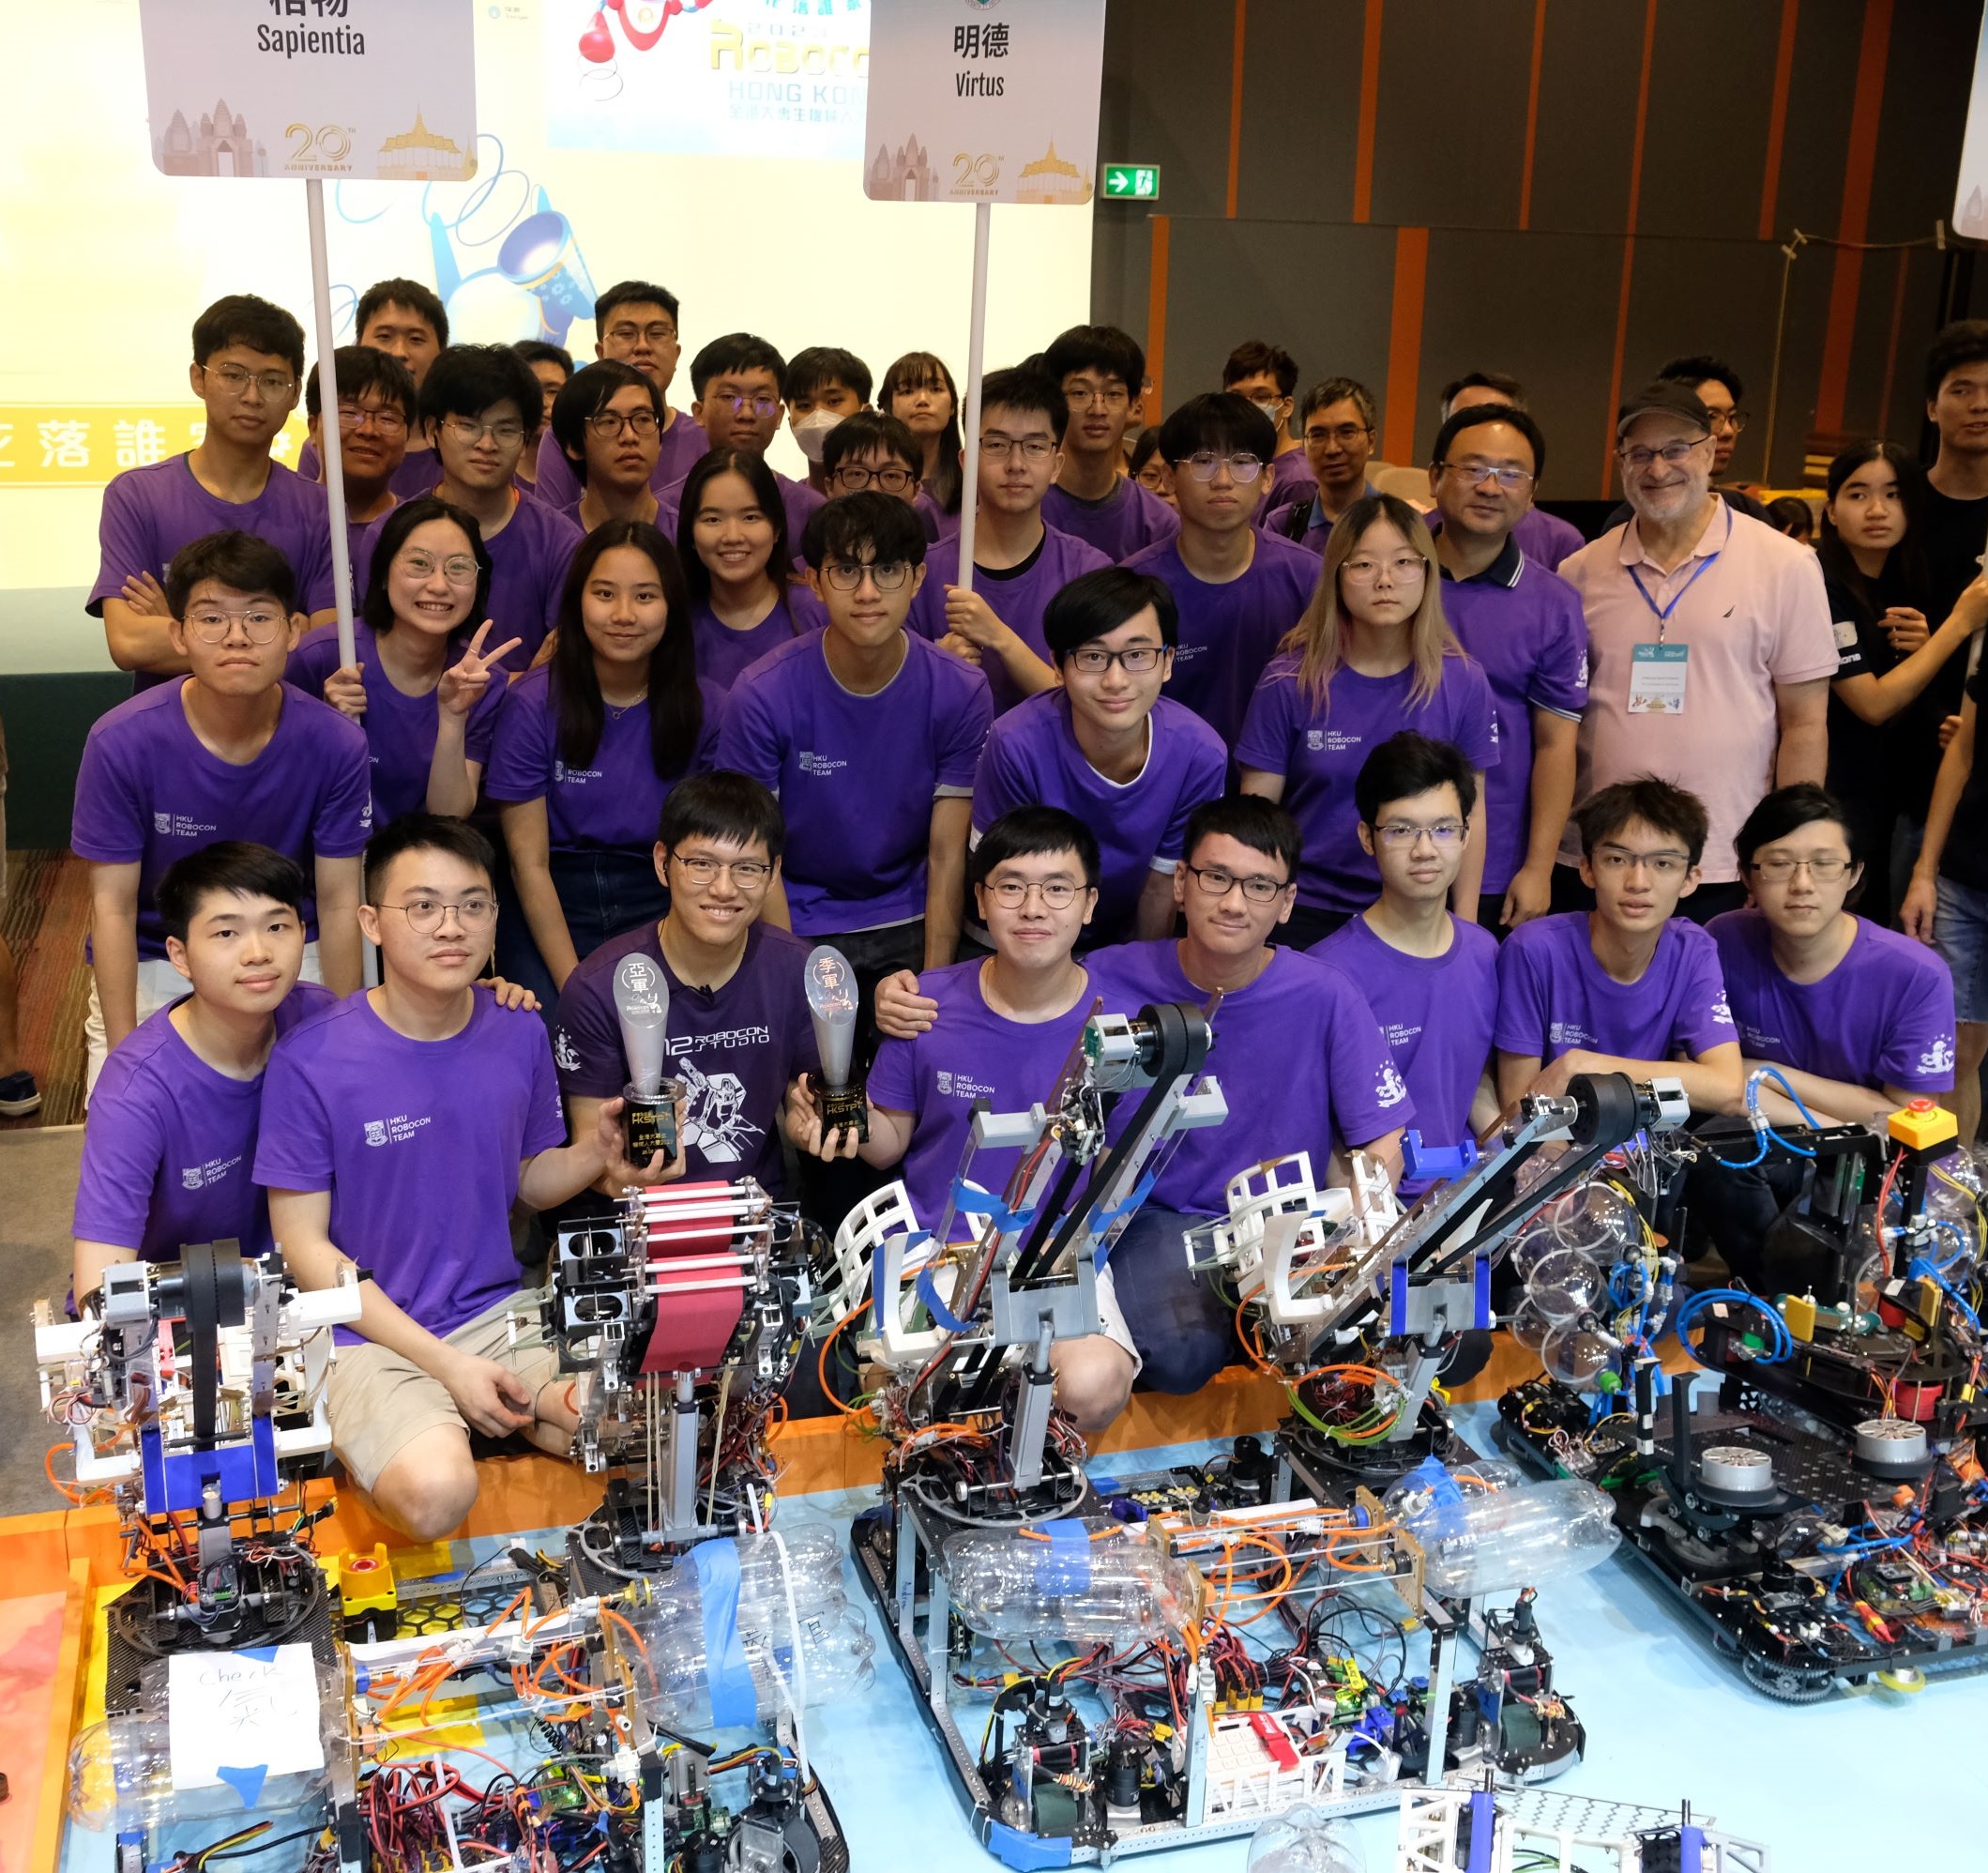 HKU Robocon Team